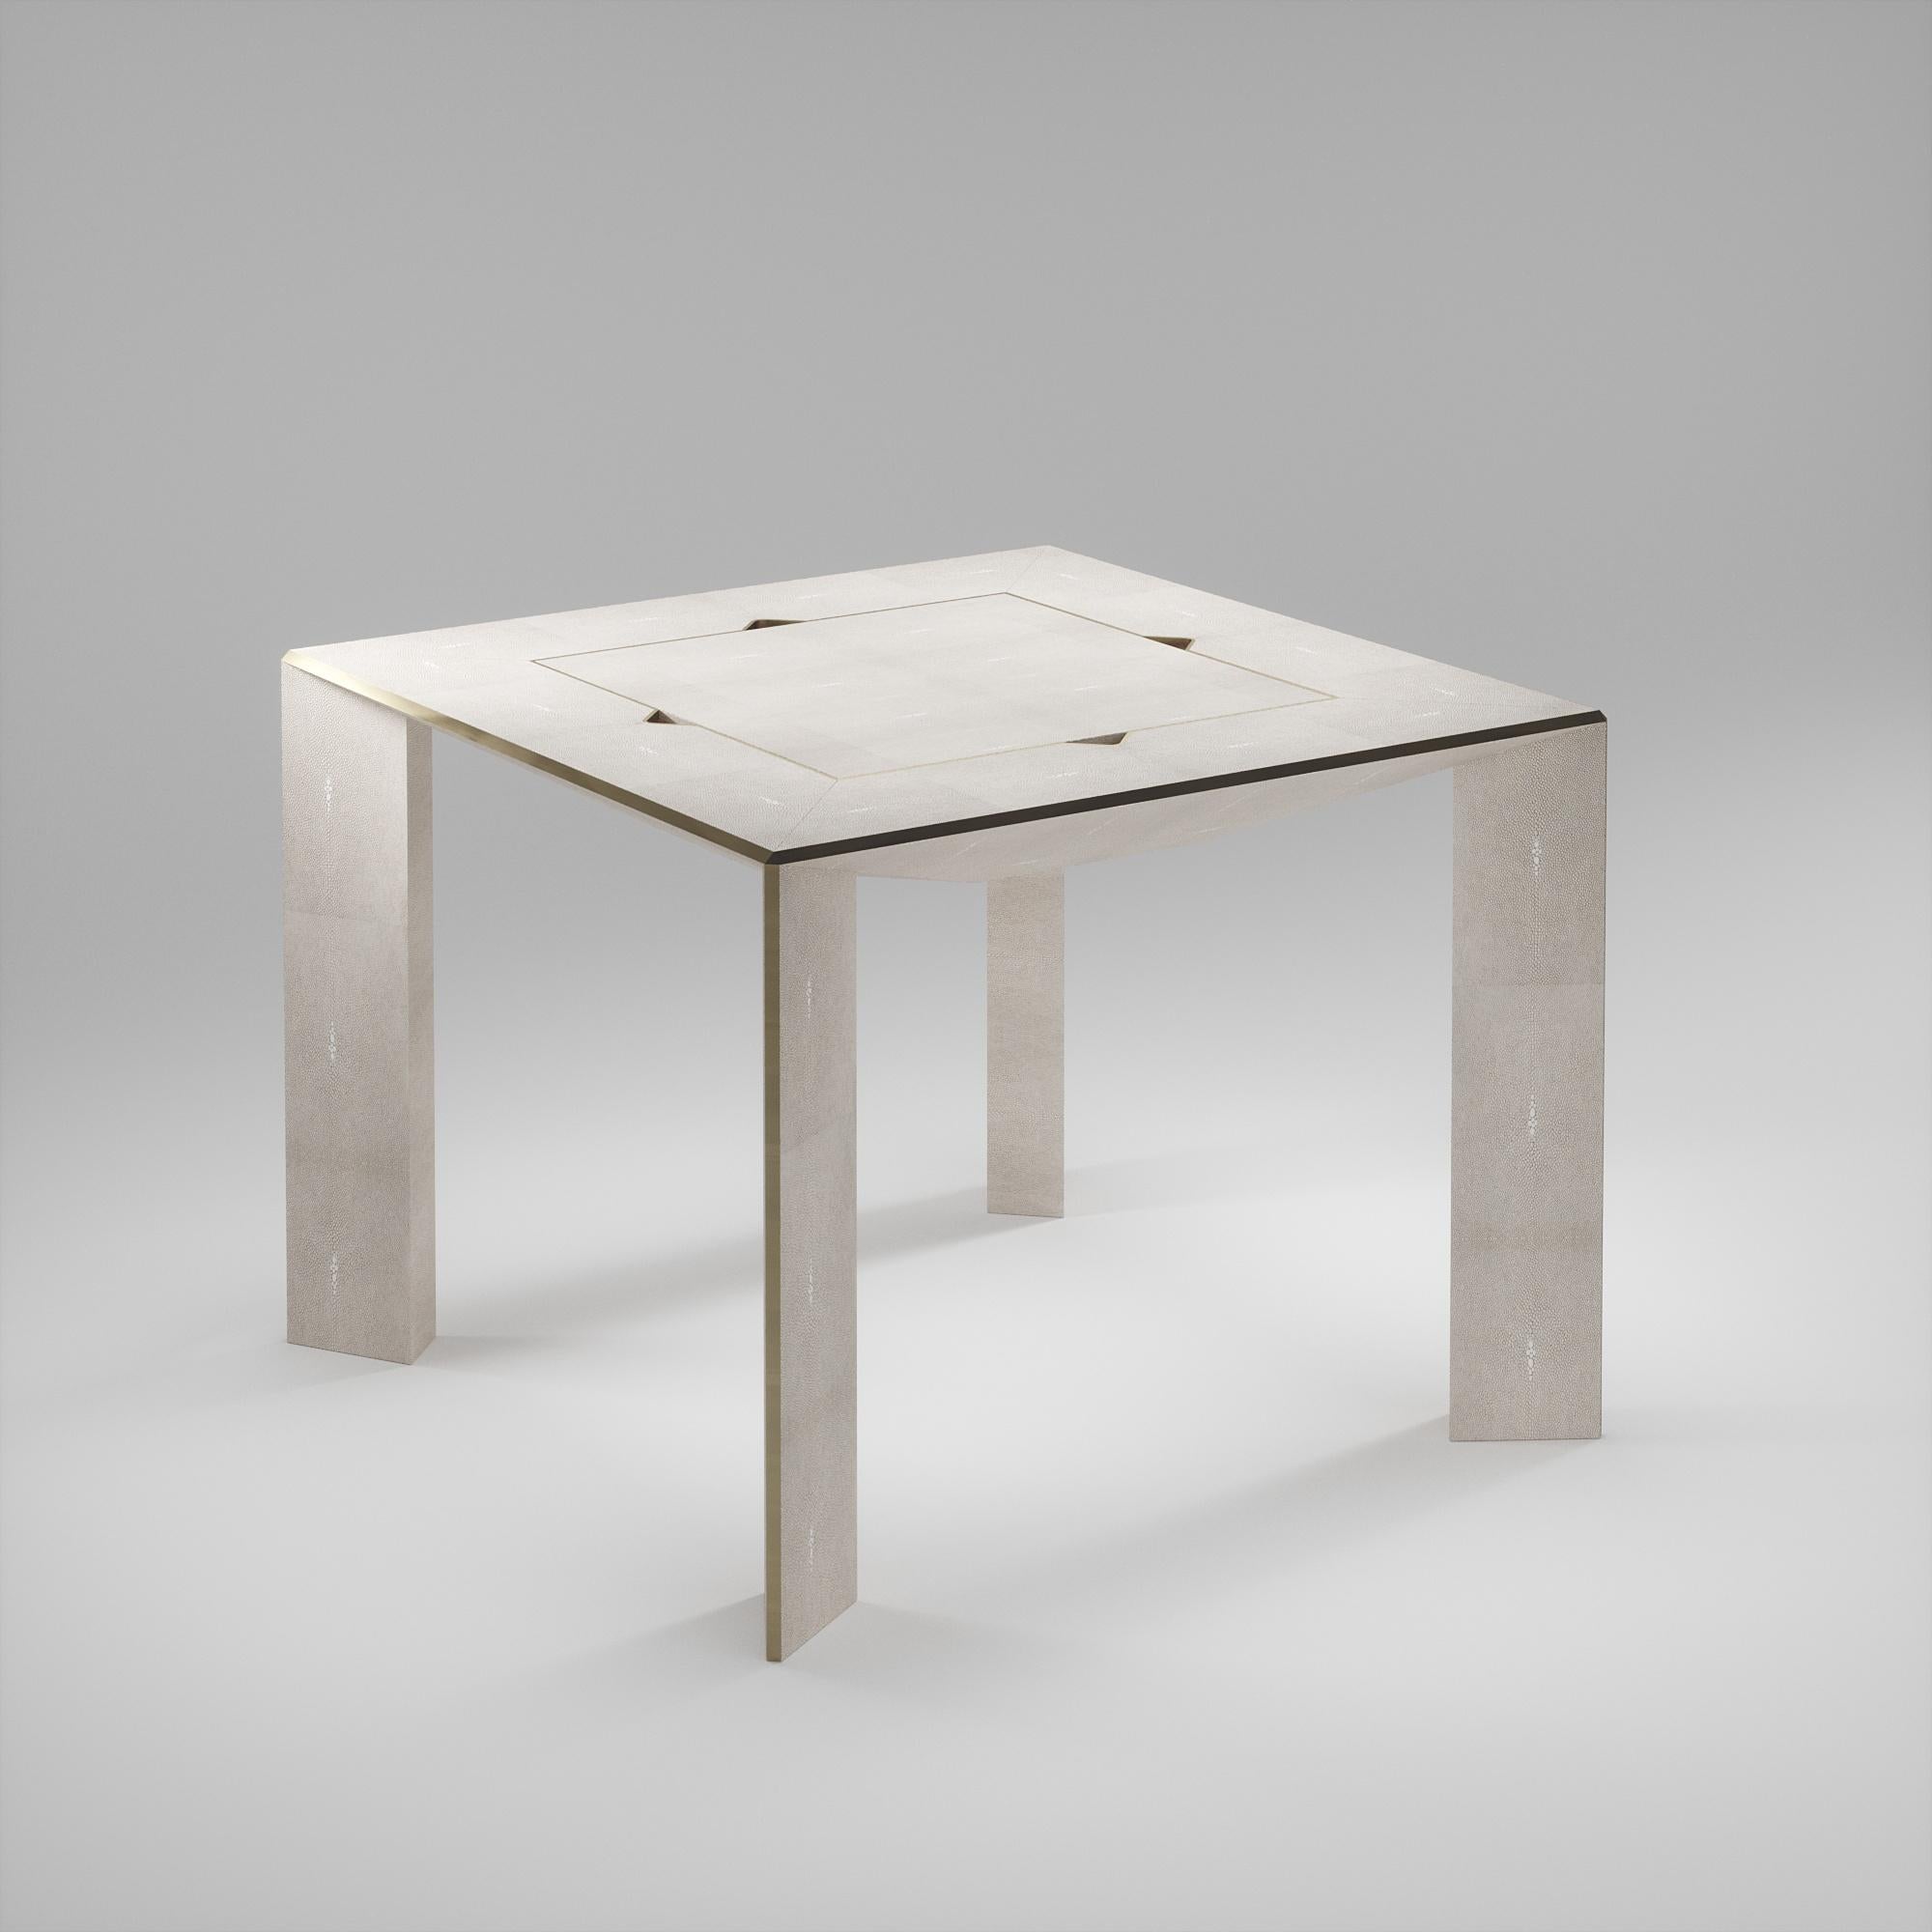 Der 4 in 1 Parsons Spieltisch R&Y Augousti ist ein wahrhaft luxuriöses Schmuckstück für Ihr Zuhause. Die klaren Linien des gesamten Möbelstücks in cremefarbenem Chagrin, akzentuiert durch die eleganten Messingdetails in Bronze-Patina an den Beinen,